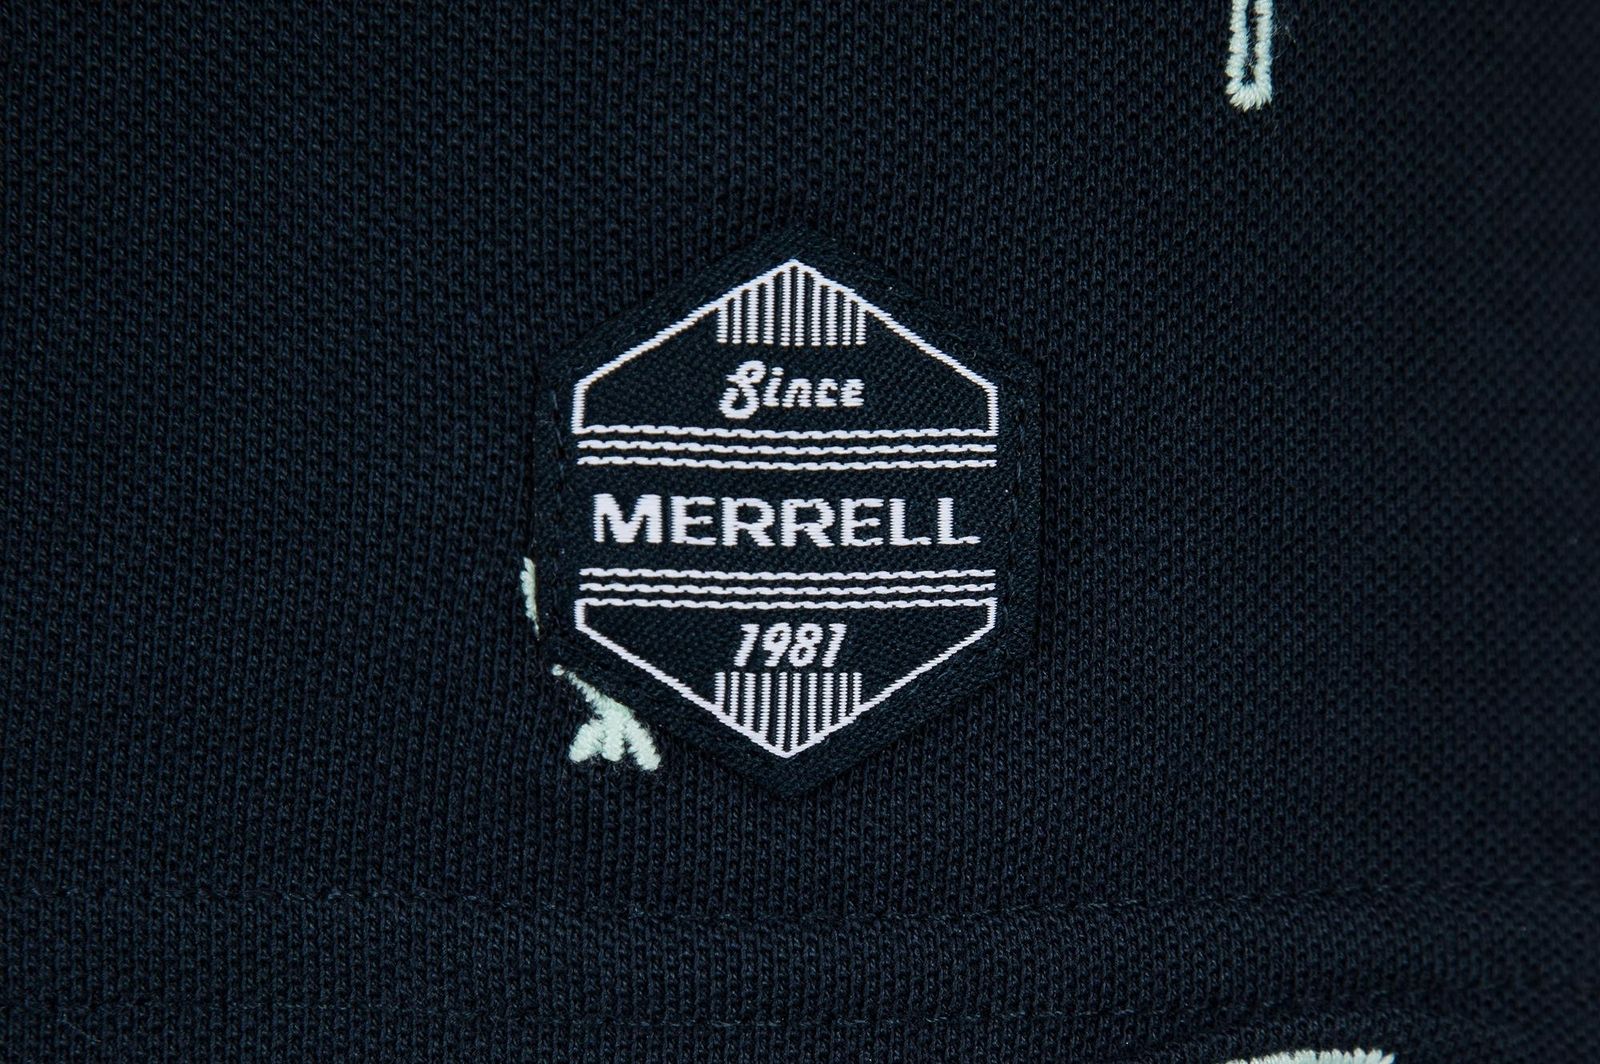   Merrell Men's Polo, : . S19AMRPOM01-M1.  56